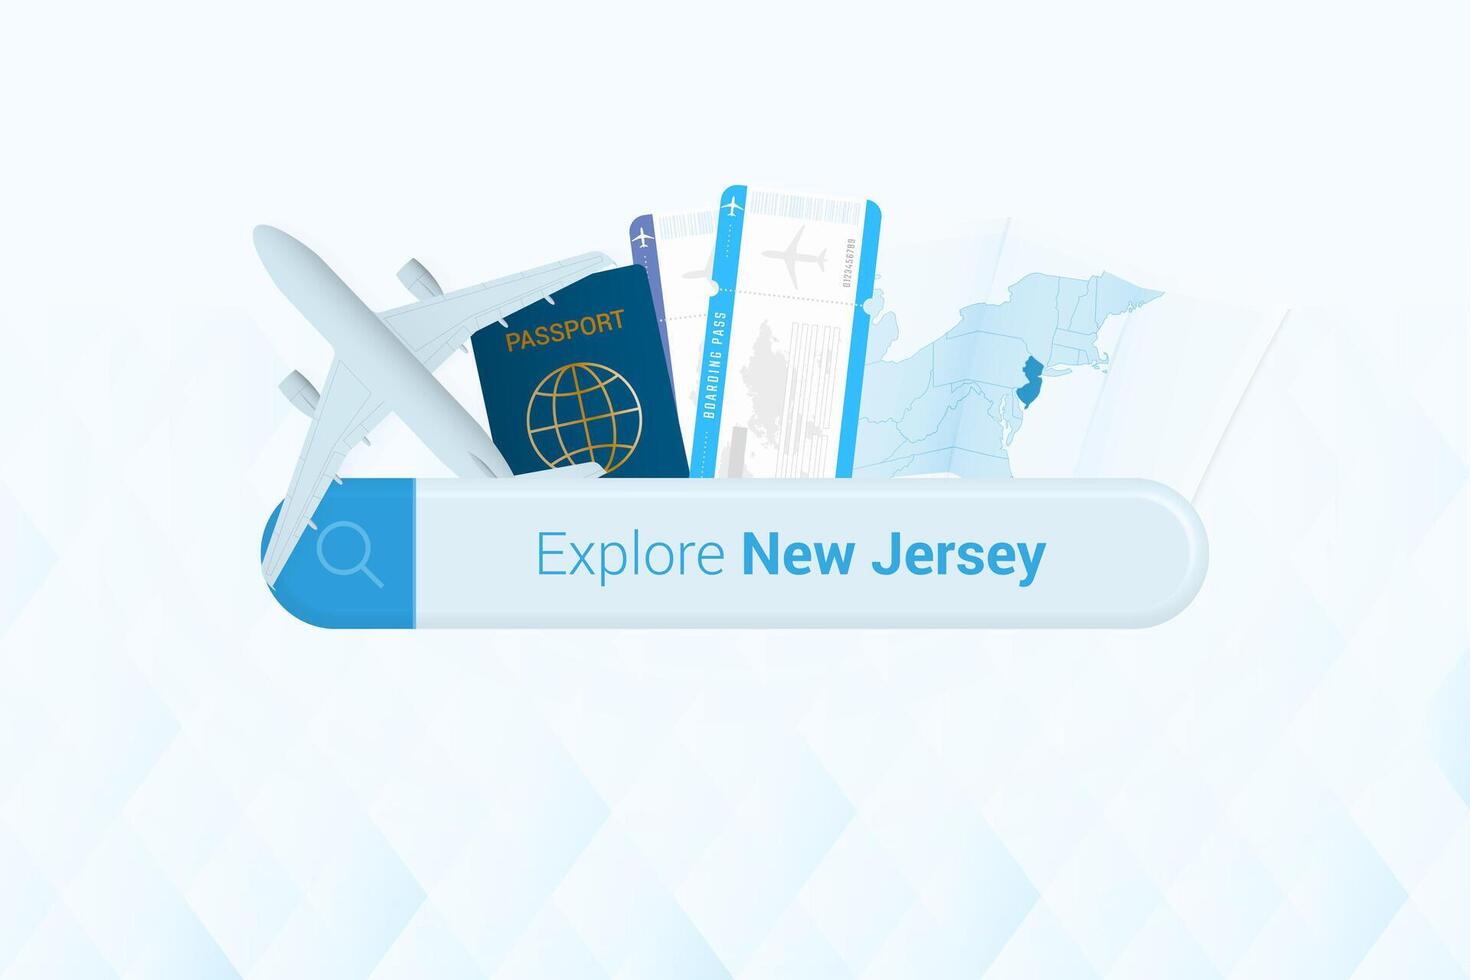 recherche des billets à Nouveau Jersey ou Voyage destination dans Nouveau Jersey. recherche bar avec avion, passeport, embarquement passer, des billets et carte. vecteur